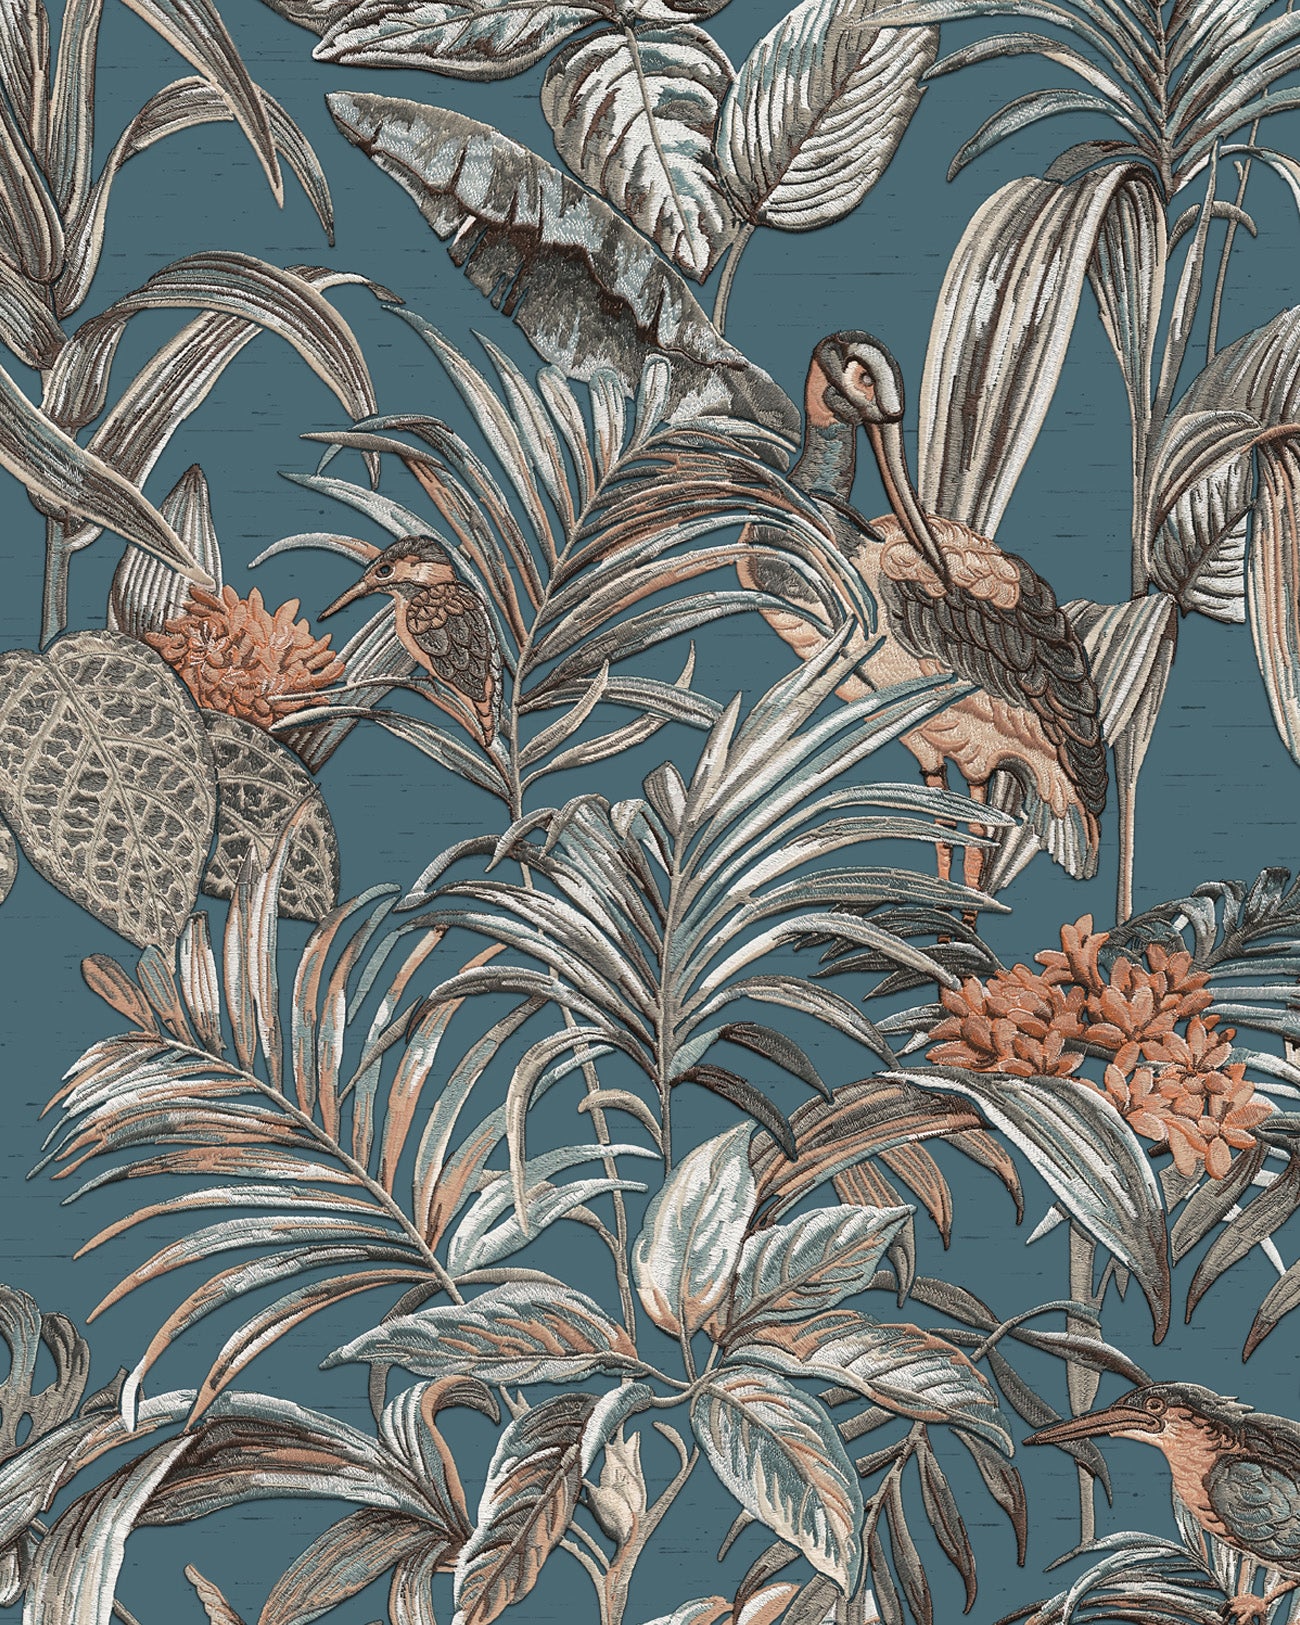 Papier peint motif d'oiseaux Profhome DE120016-DI papier peint intissé gaufré à chaud gaufré avec un dessin exotique brillant bleu pétrole argent brun caramel 5,33 m2